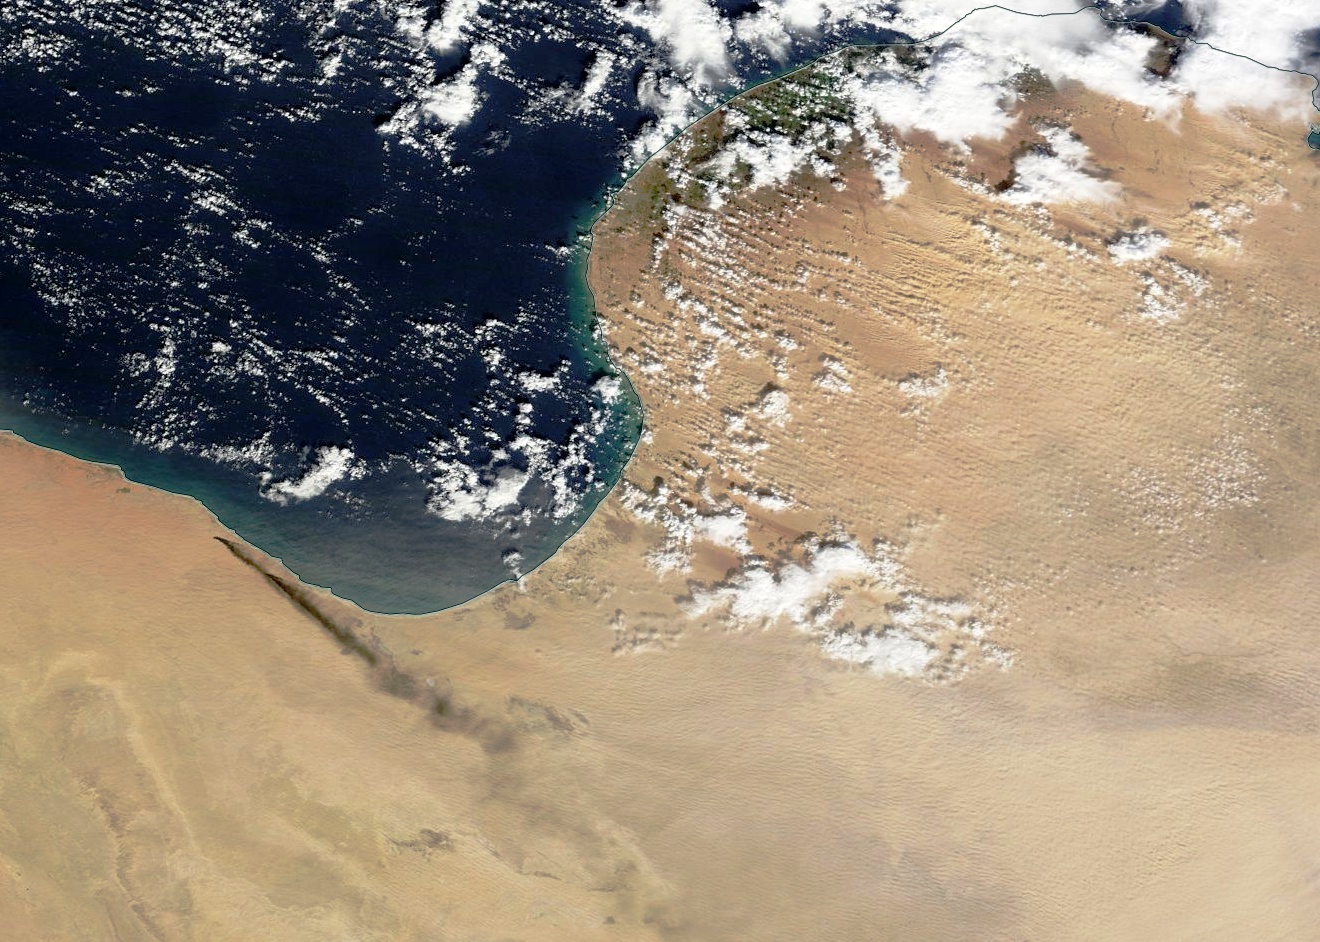 Libye - état islamique - EI - incendie - feux - terminaux pétroliers - Cuves stockage pétrole - Janvier 2016 - Satellite MODIS - Terra